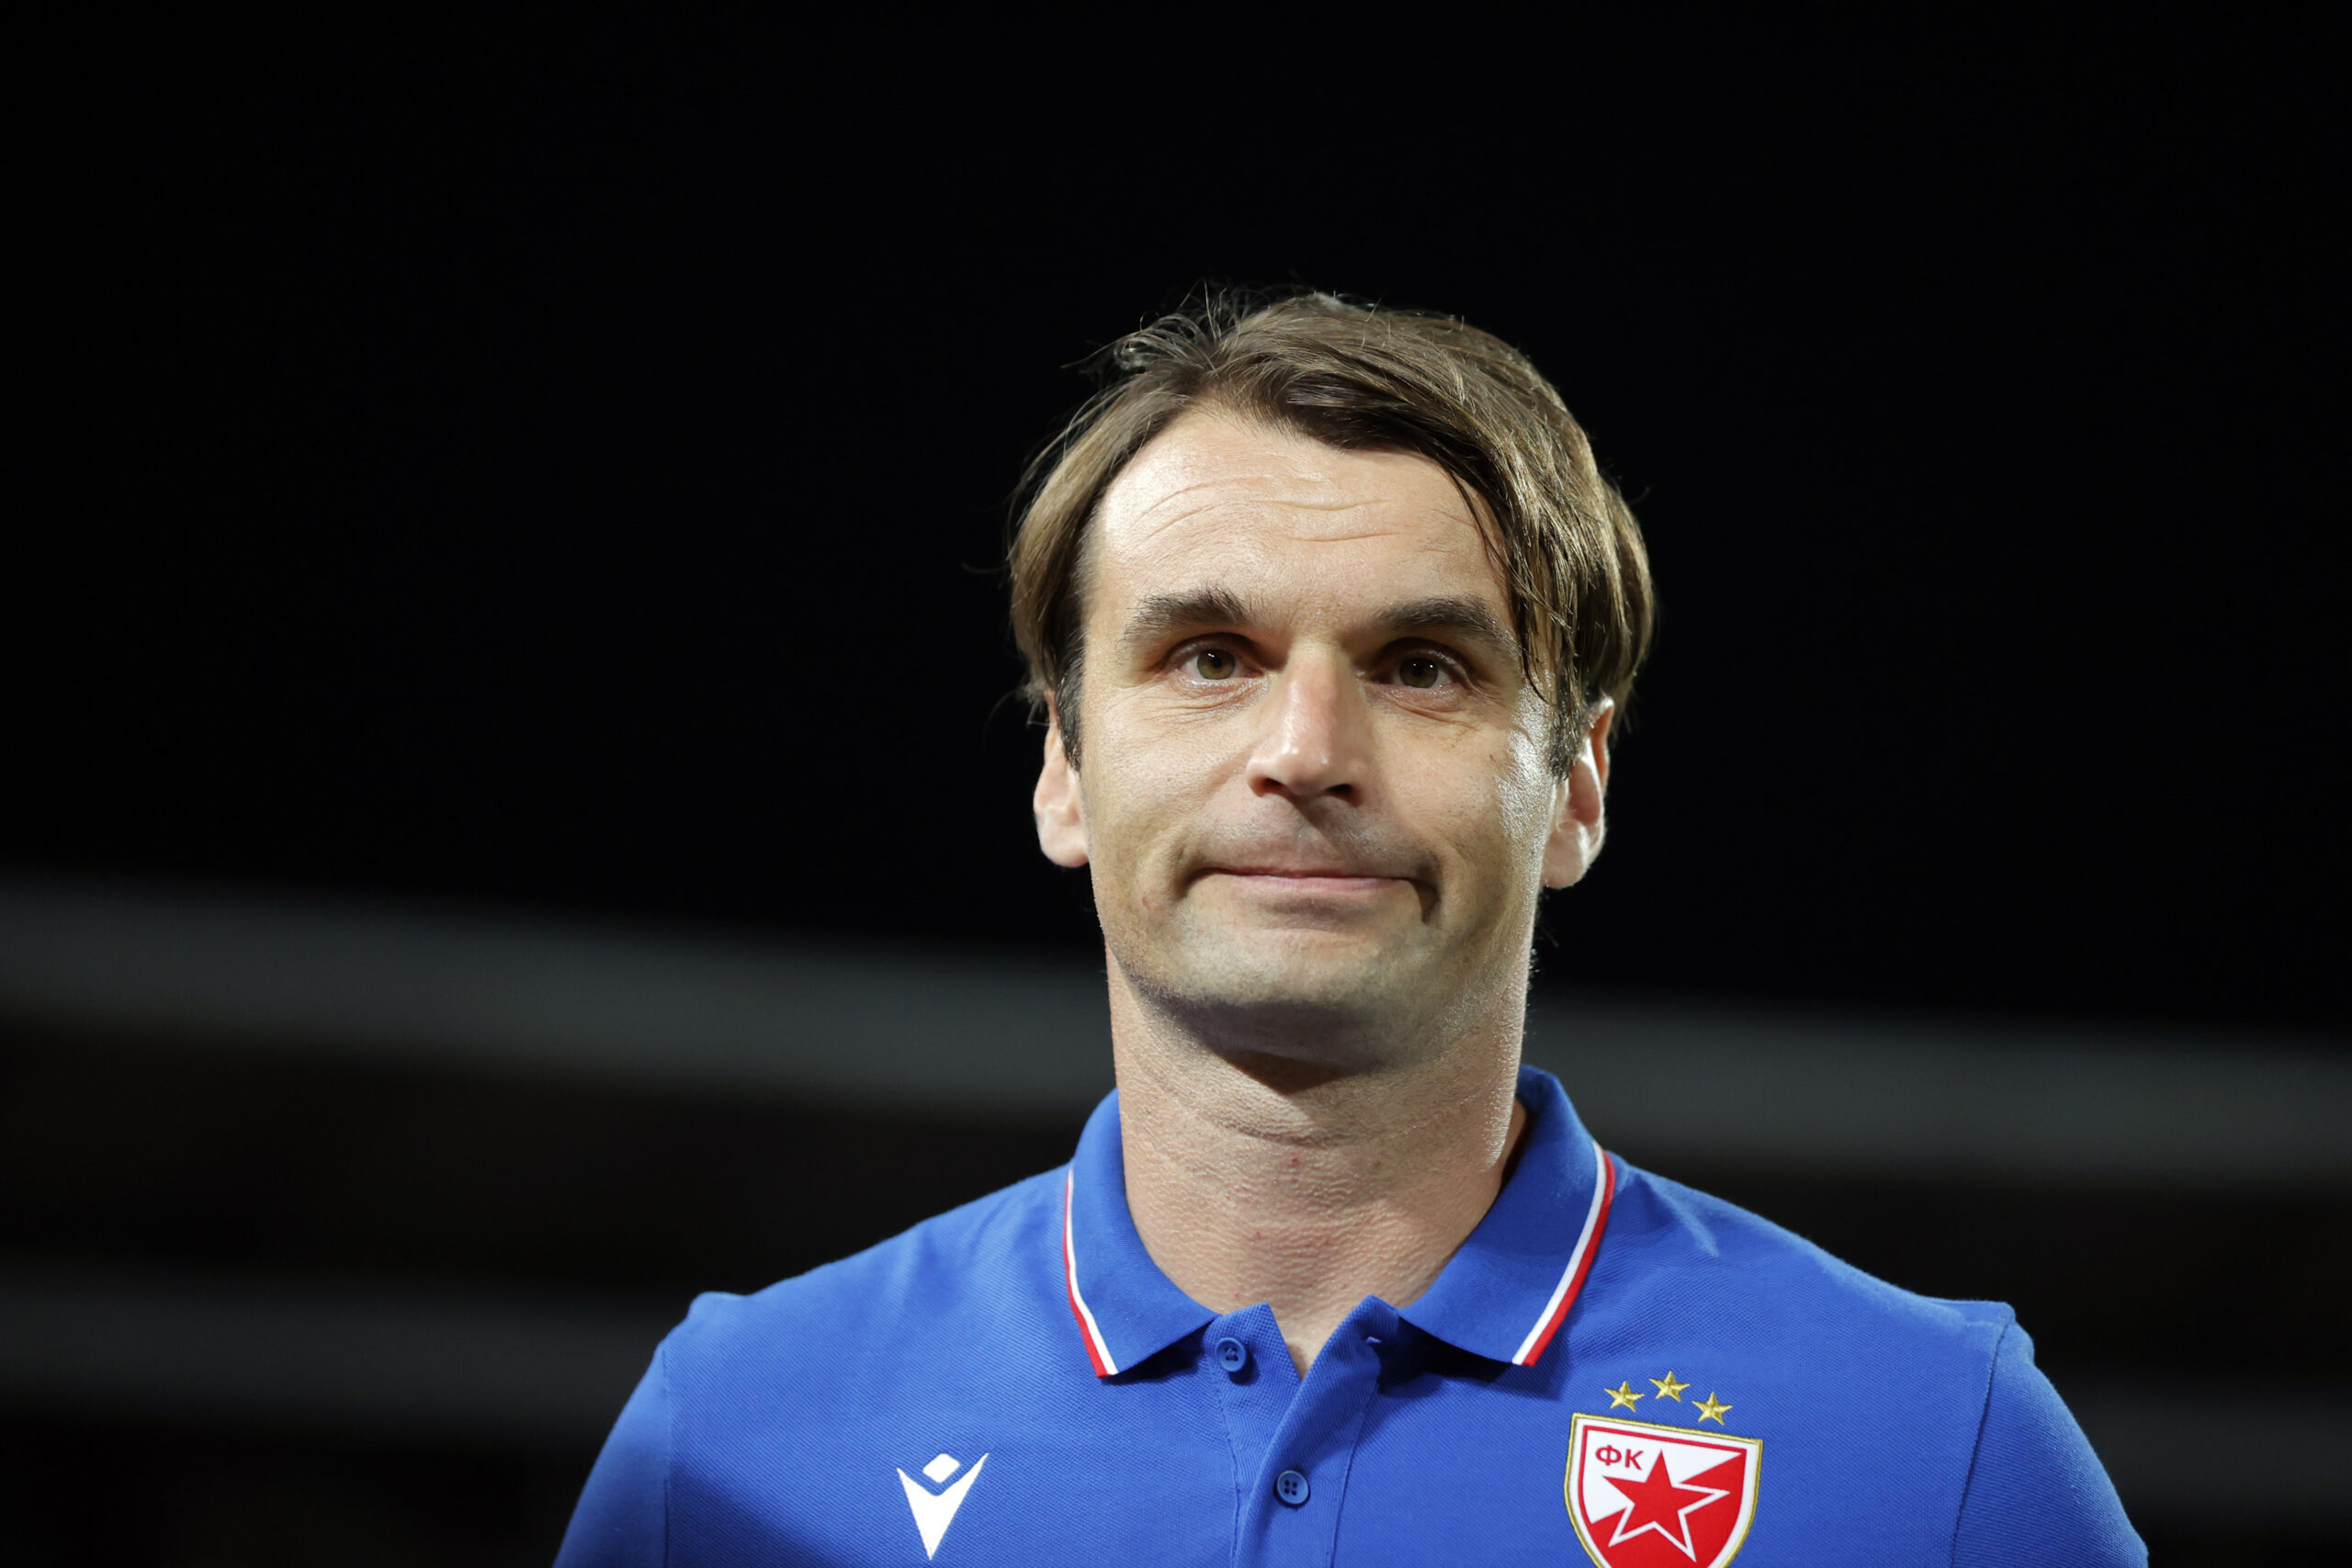 Crvena Zvezda 2022/23: Their tactics under Miloš Milojević - scout report